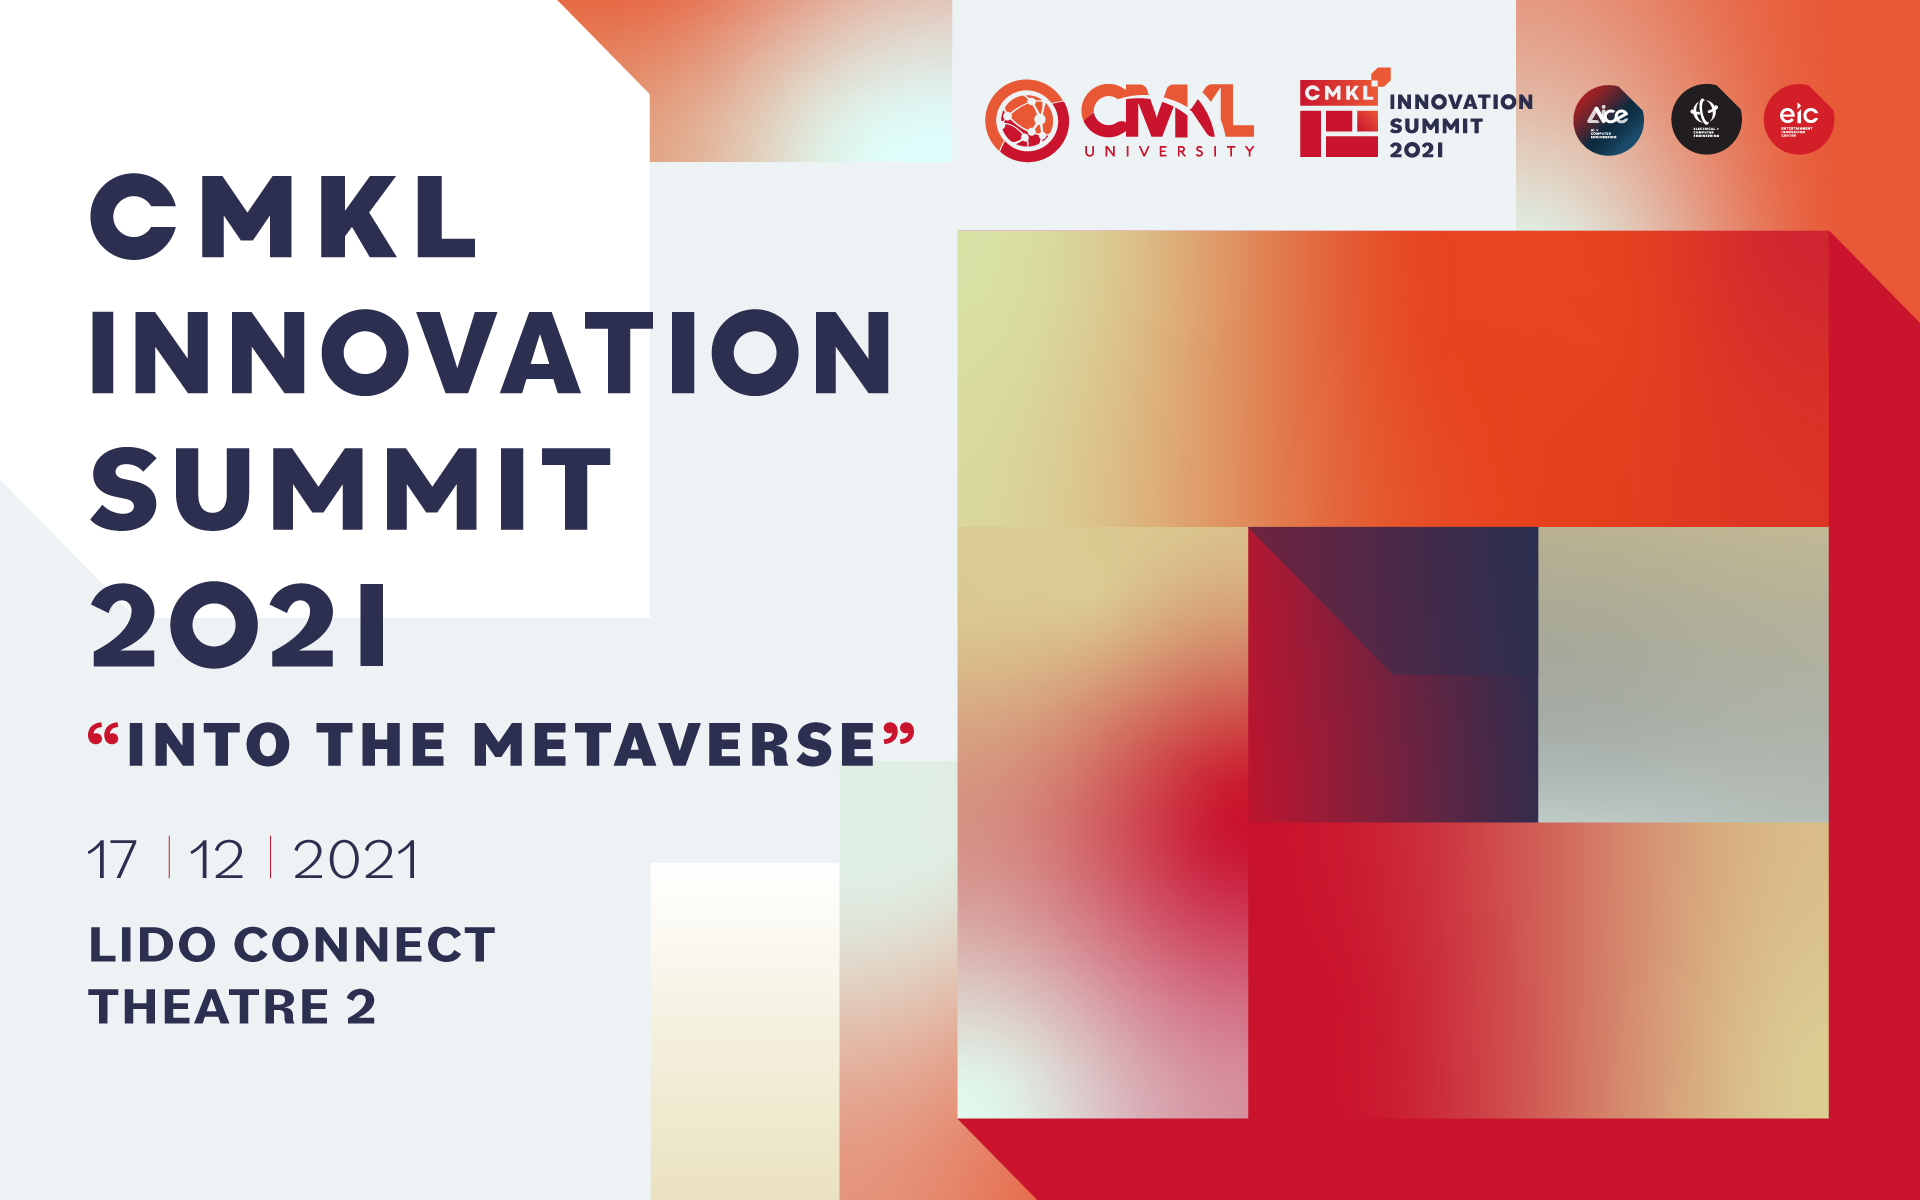 มหาวิทยาลัย CMKL จัดงานสัมมนา CMKL Innovation Summit 2021 "Into the Metaverse"  ต่อยอดเทคโนโลยี AI และการสร้างสรรค์นวัตกรรมที่ไม่รู้จบ มุ่งสร้างสังคมแห่งอนาคตที่ยั่งยืน